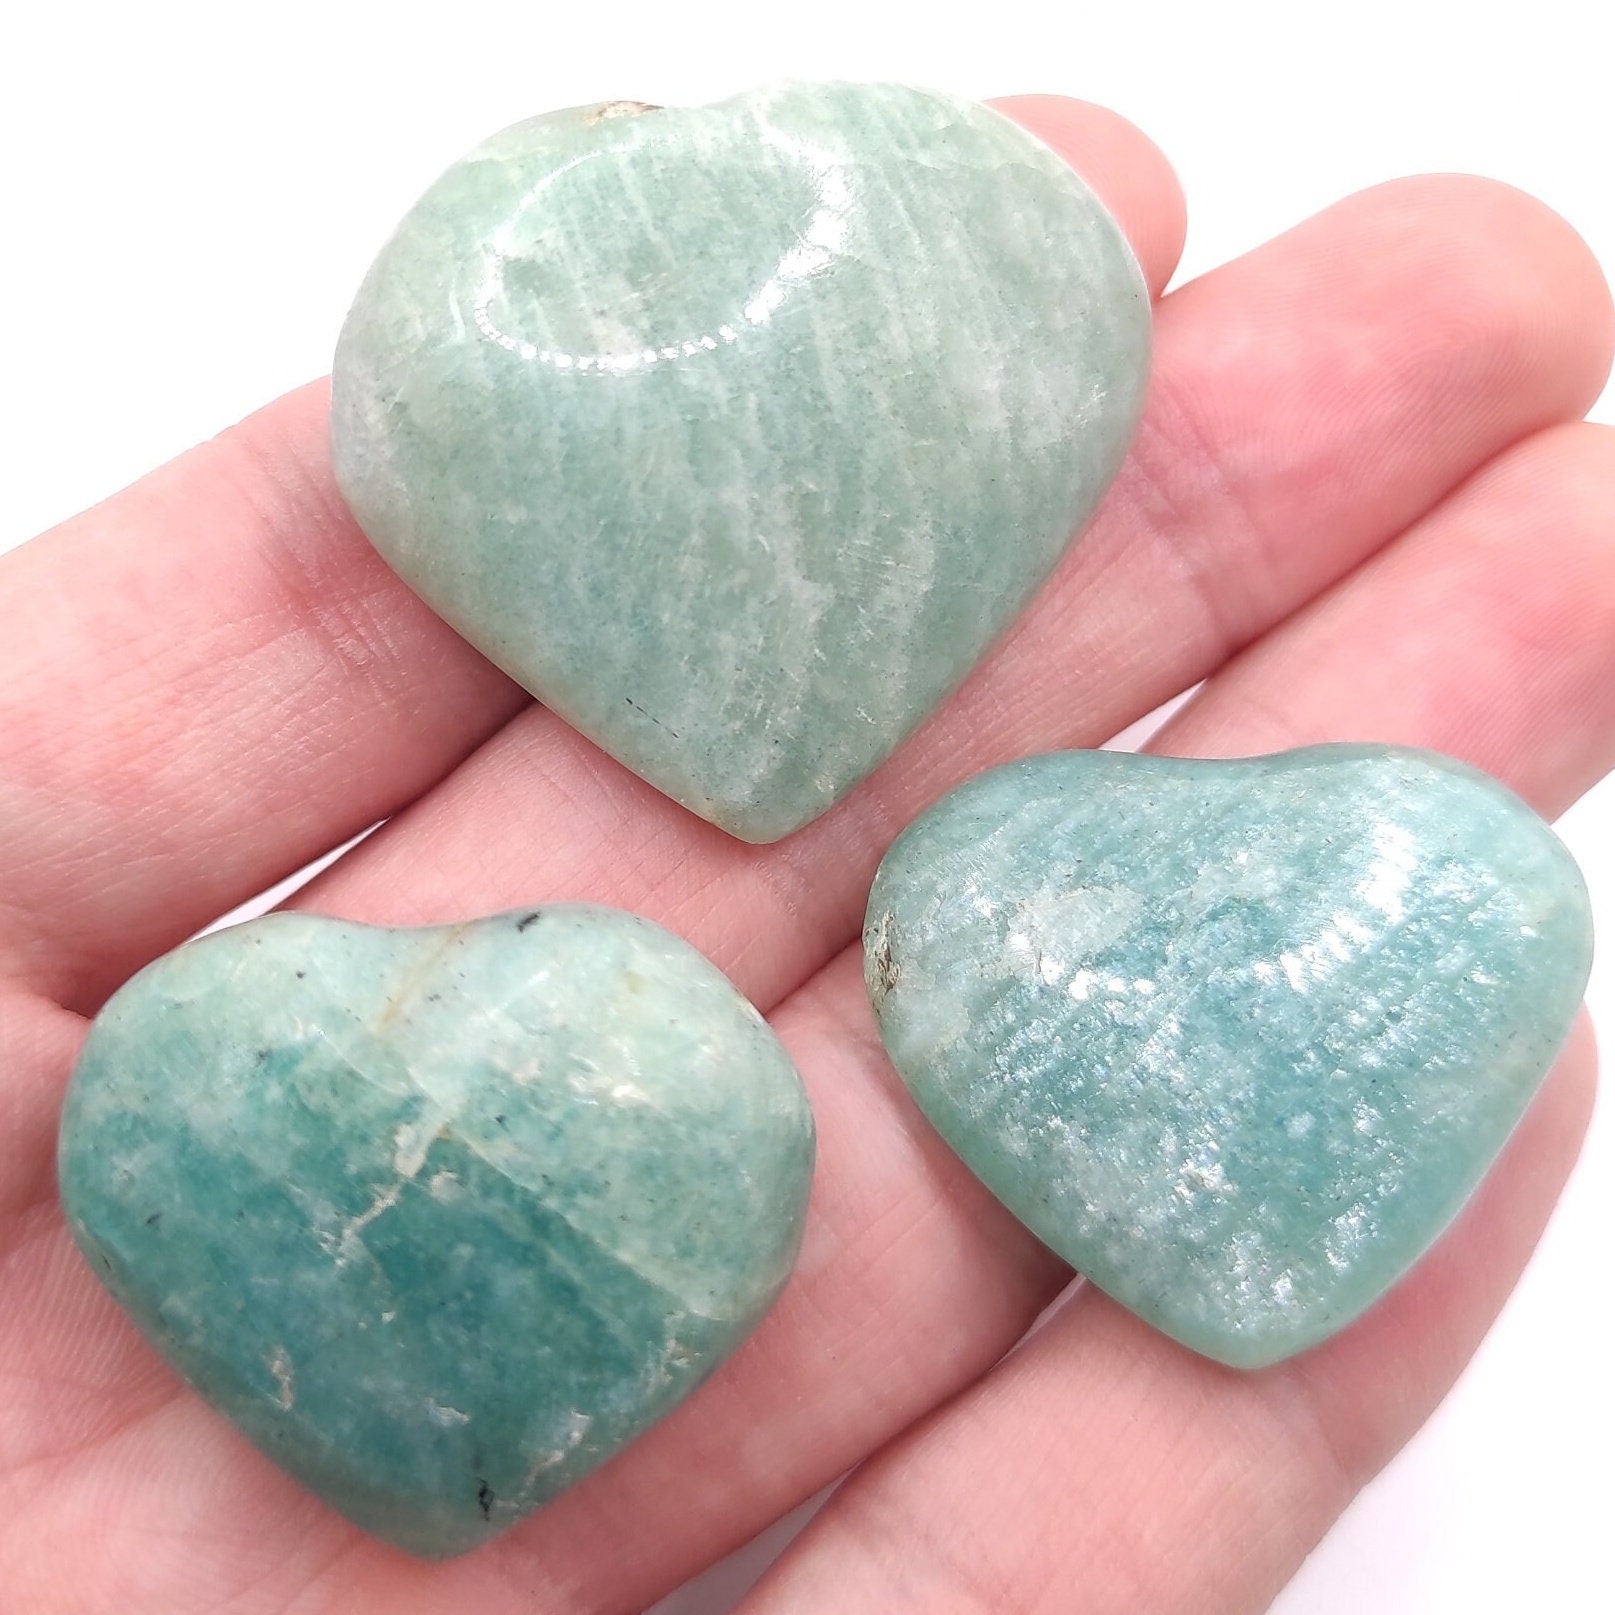 3pc set of Amazonite Hearts - Polished Amazonite Crystals - Crystal Set - Polished Stones - Amazonite Tumbled Stones - Brazil